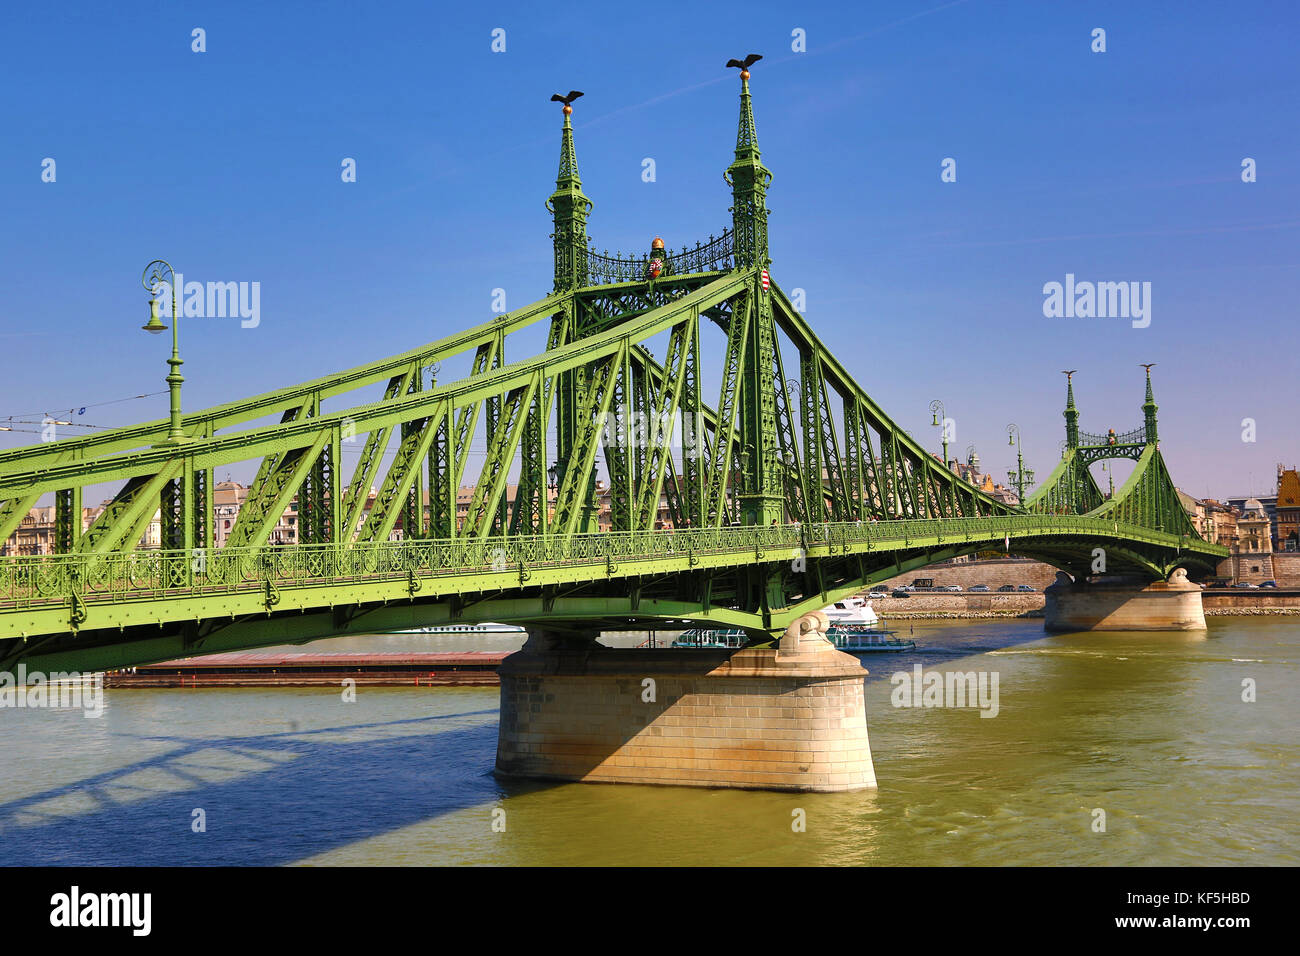 El puente de la libertad, también conocido como el puente de la libertad, sobre el río Danubio en Budapest, Hungría Foto de stock